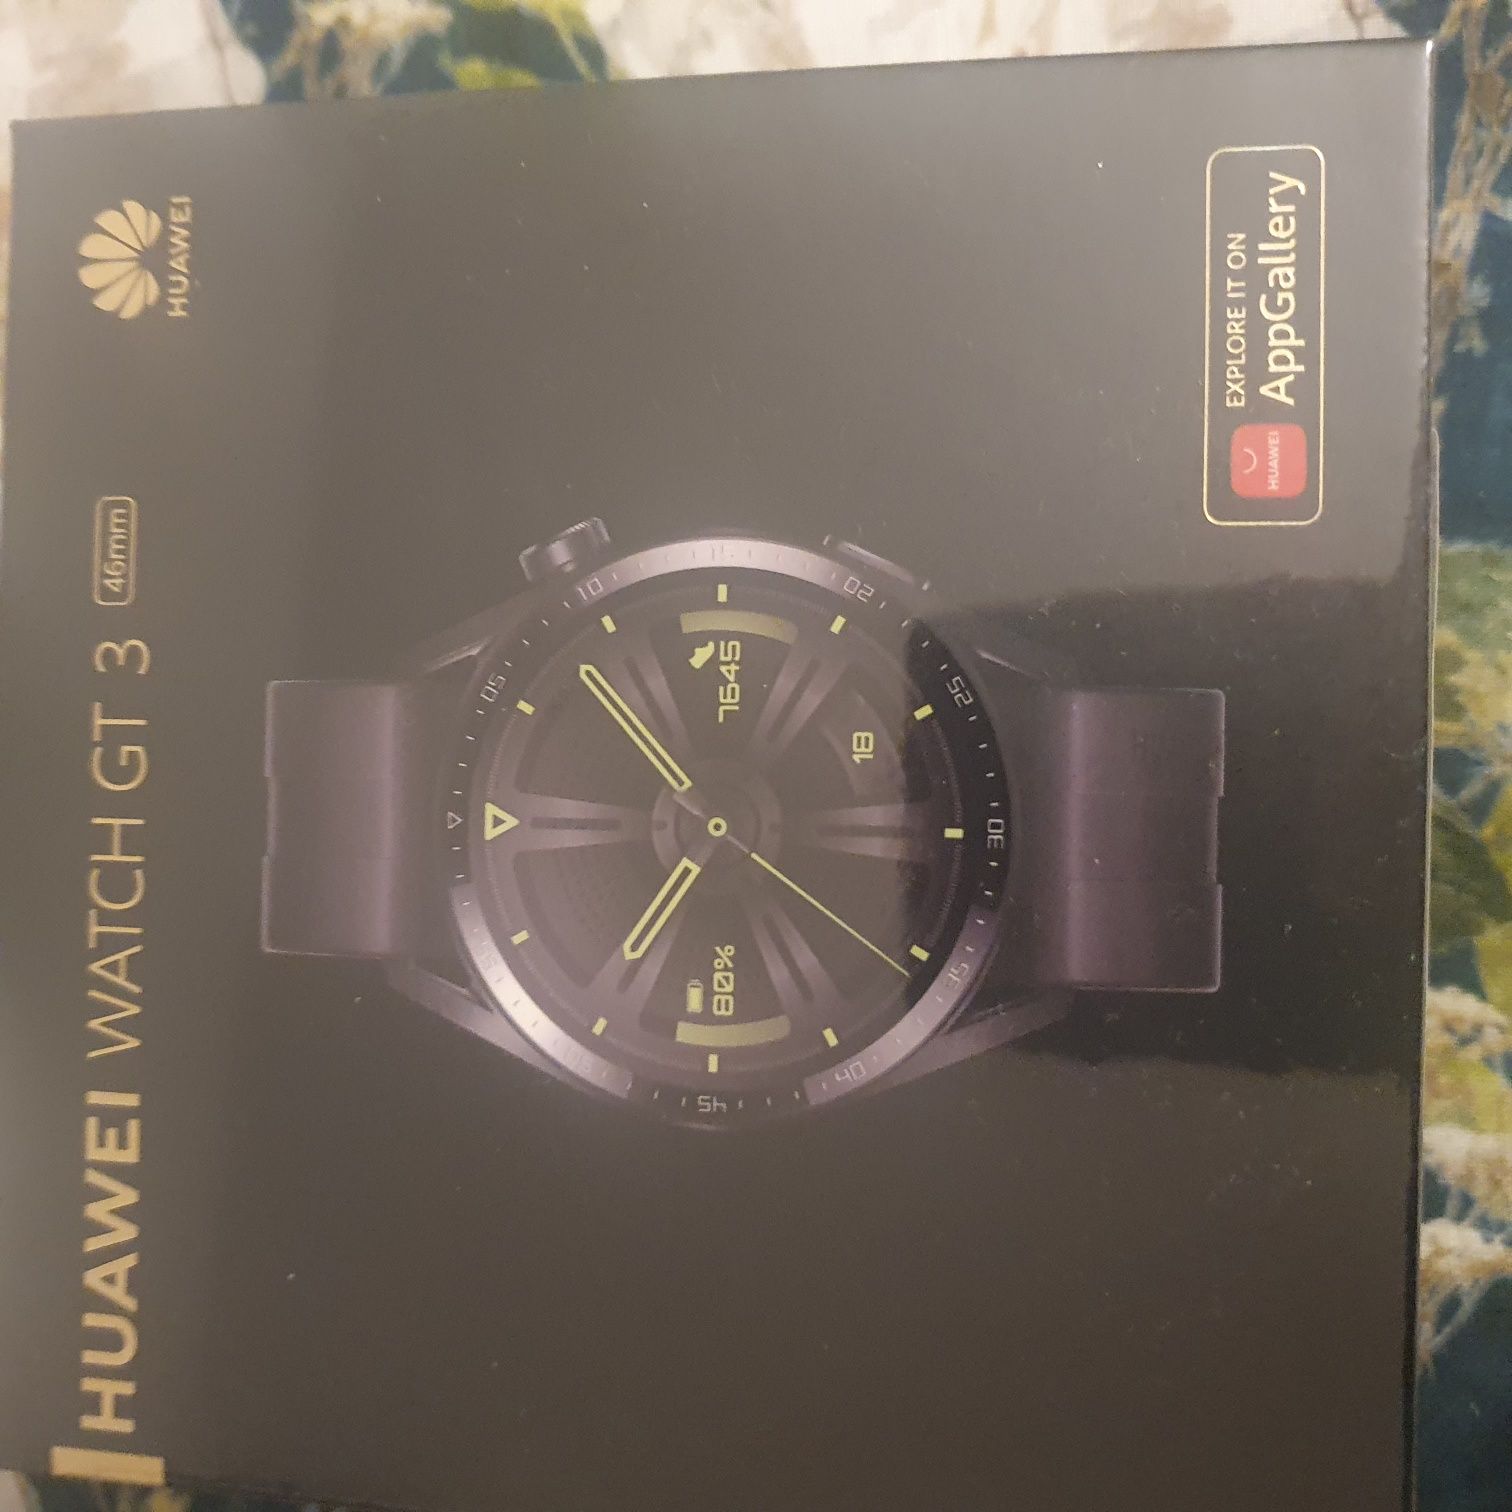 Smartwatch Huawei Watch GT3 46mm